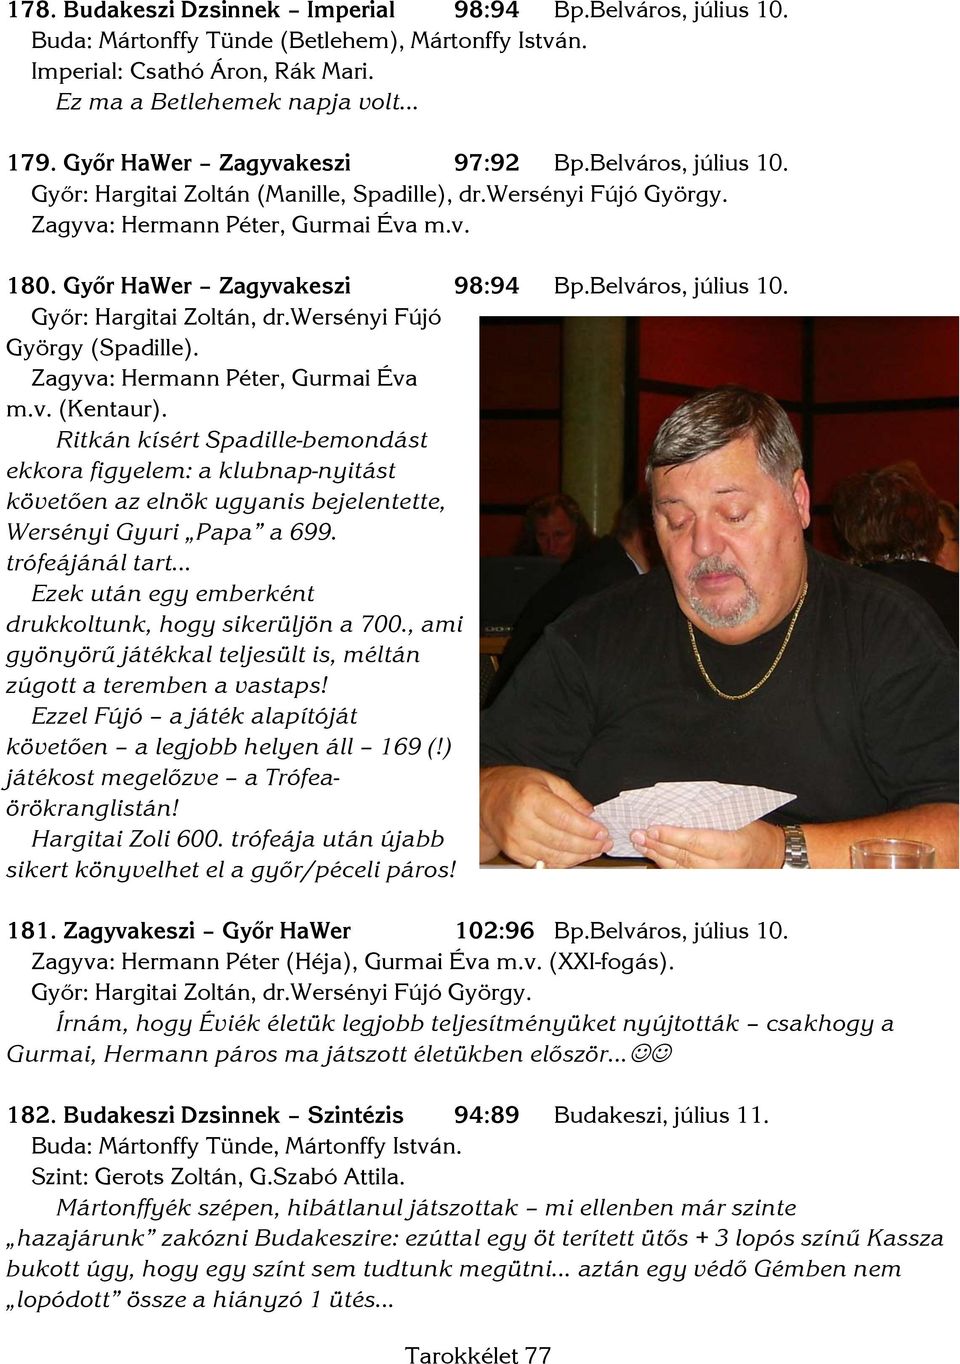 Belváros, július 10. Győr: Hargitai Zoltán, dr.wersényi Fújó György (Spadille). Zagyva: Hermann Péter, Gurmai Éva m.v. (Kentaur).